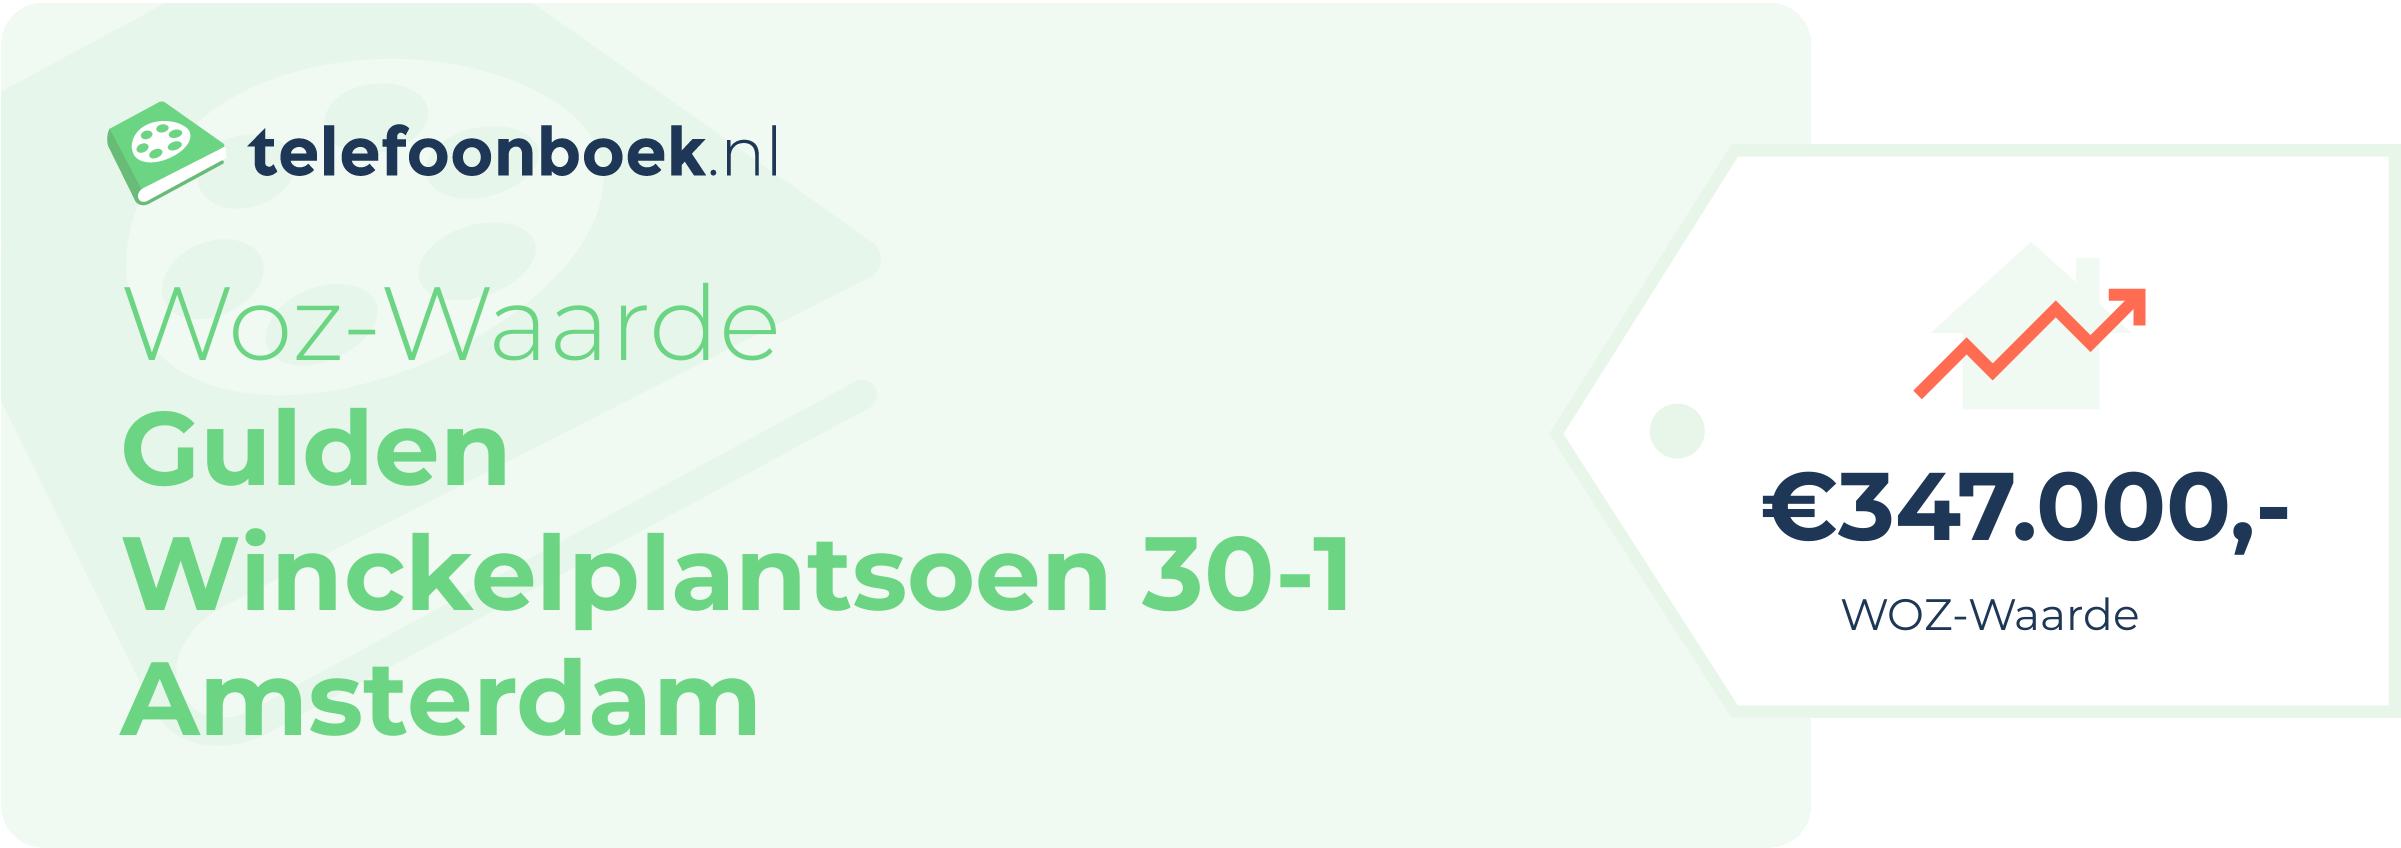 WOZ-waarde Gulden Winckelplantsoen 30-1 Amsterdam